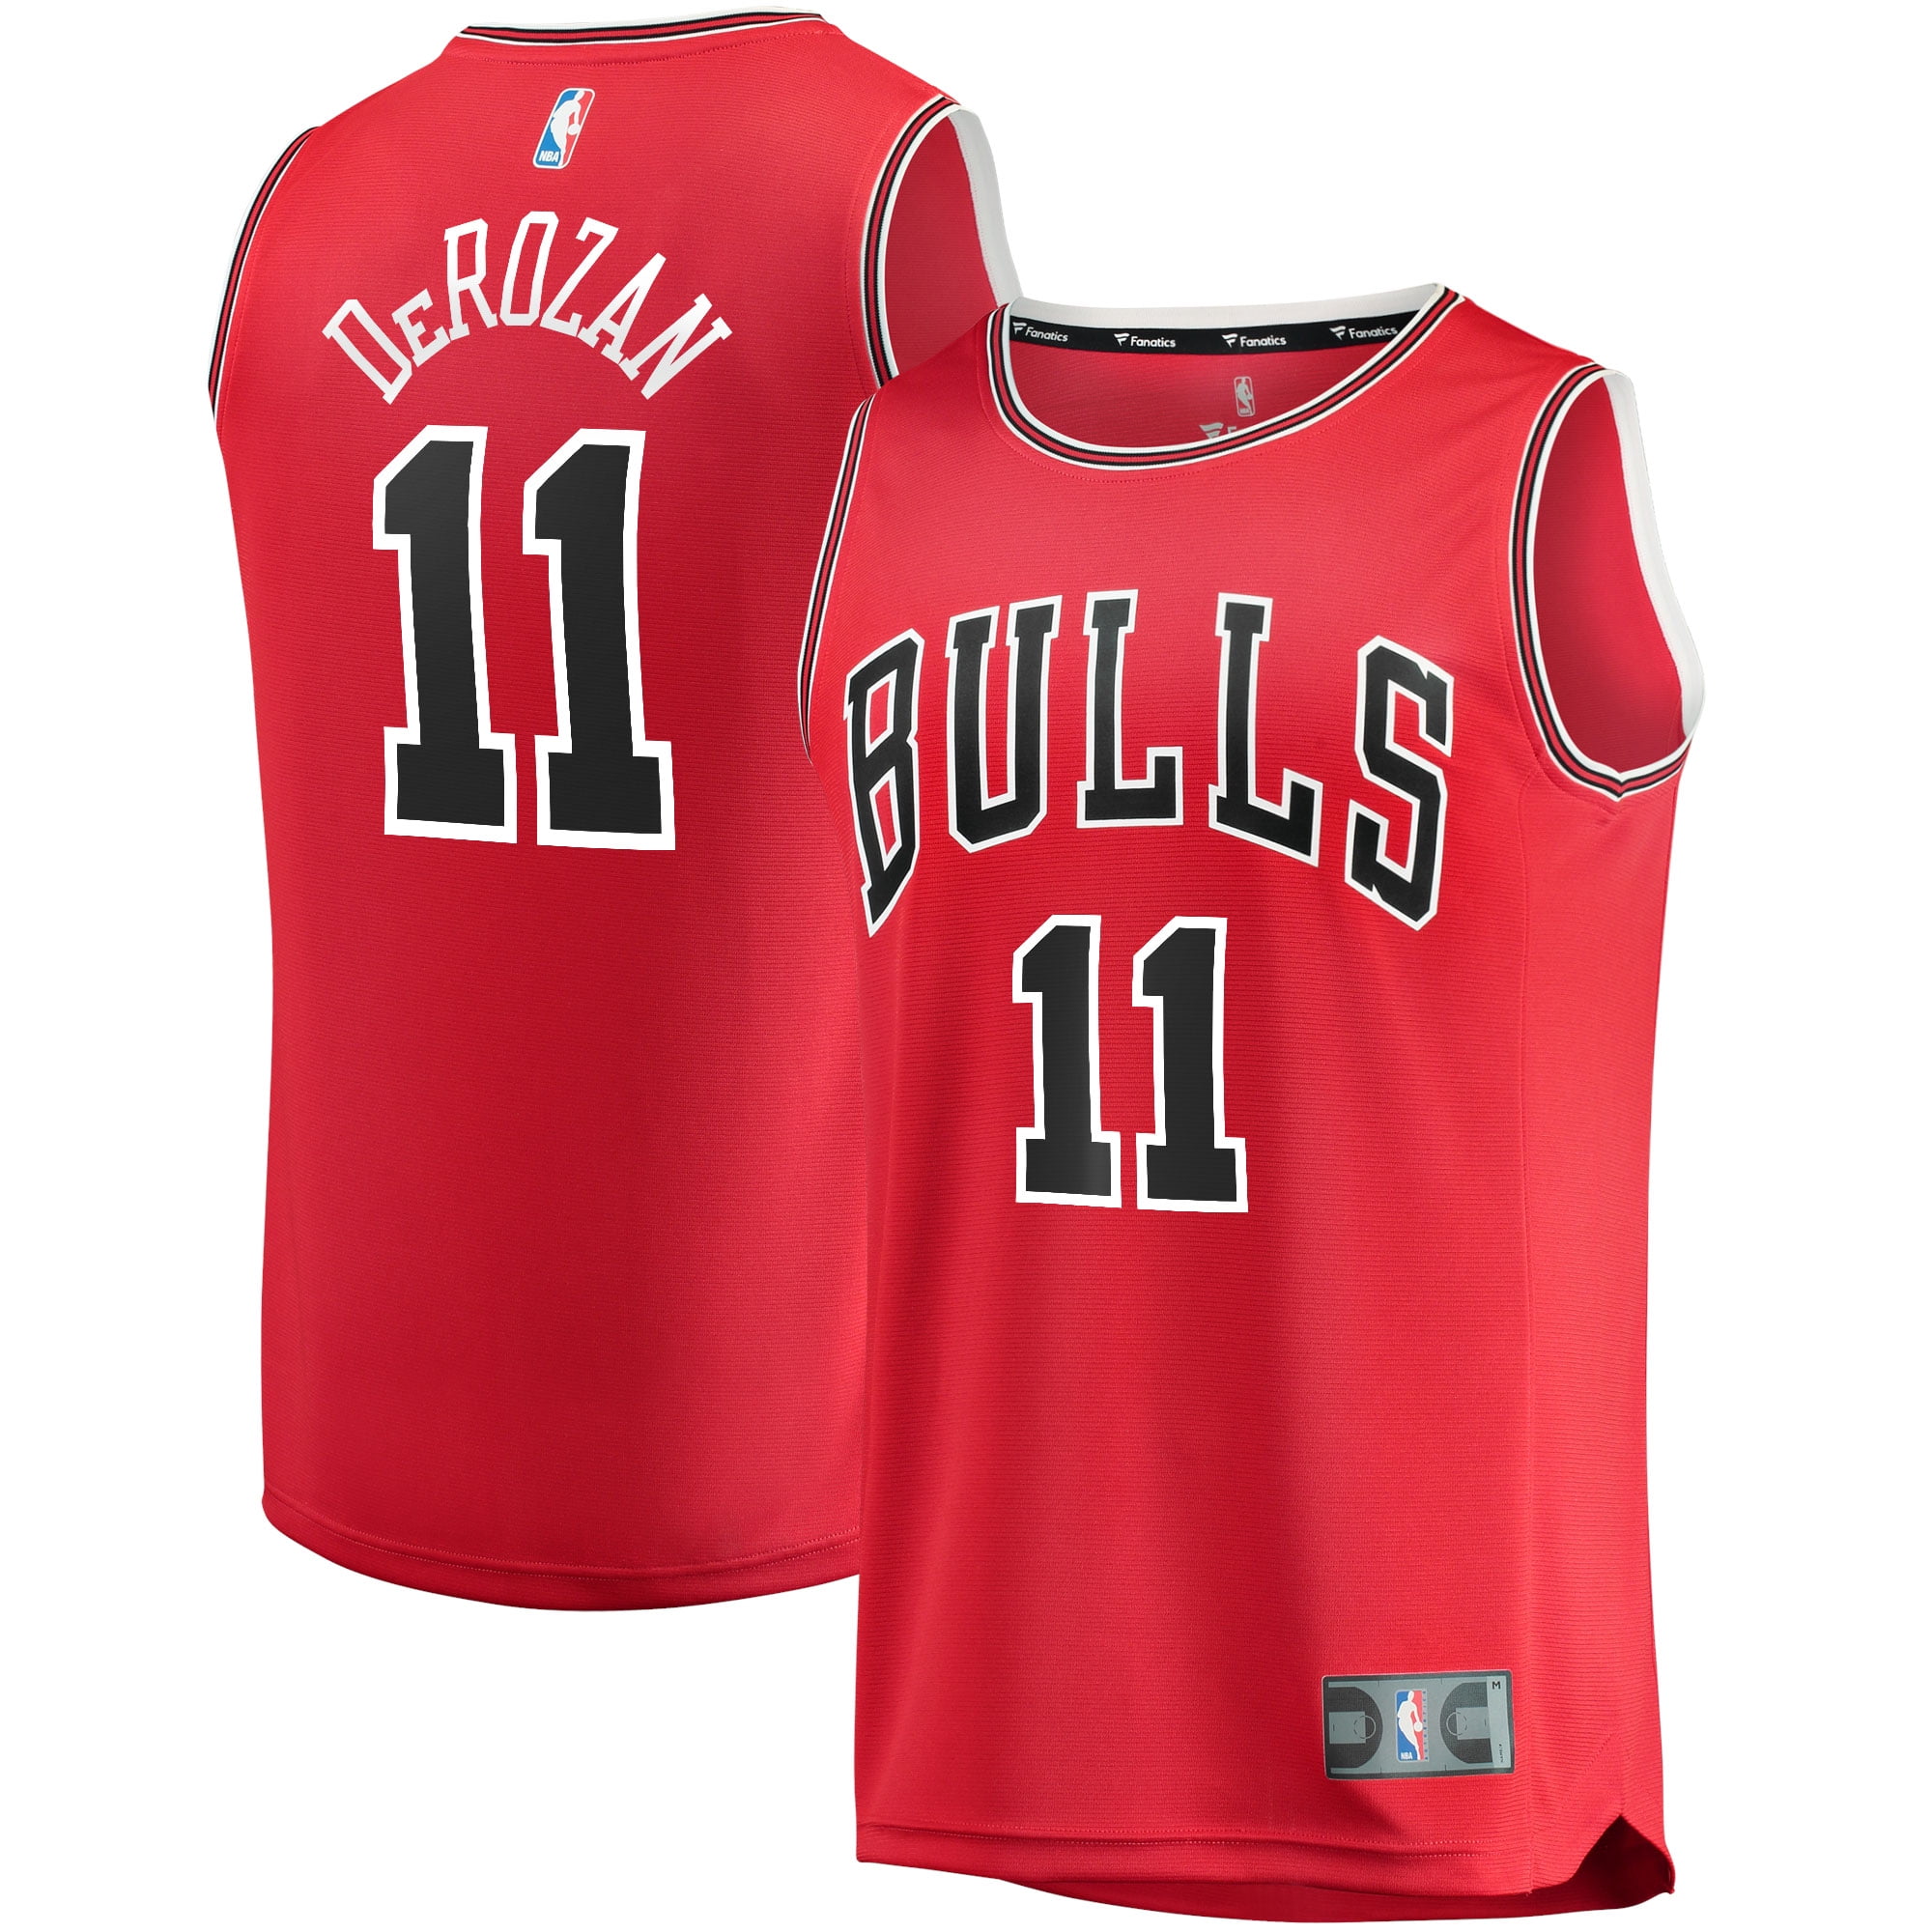 Retro 95 96 Toni Kukoc #7 Chicago Bulls Basketball Jerseys Stitched Stripe 